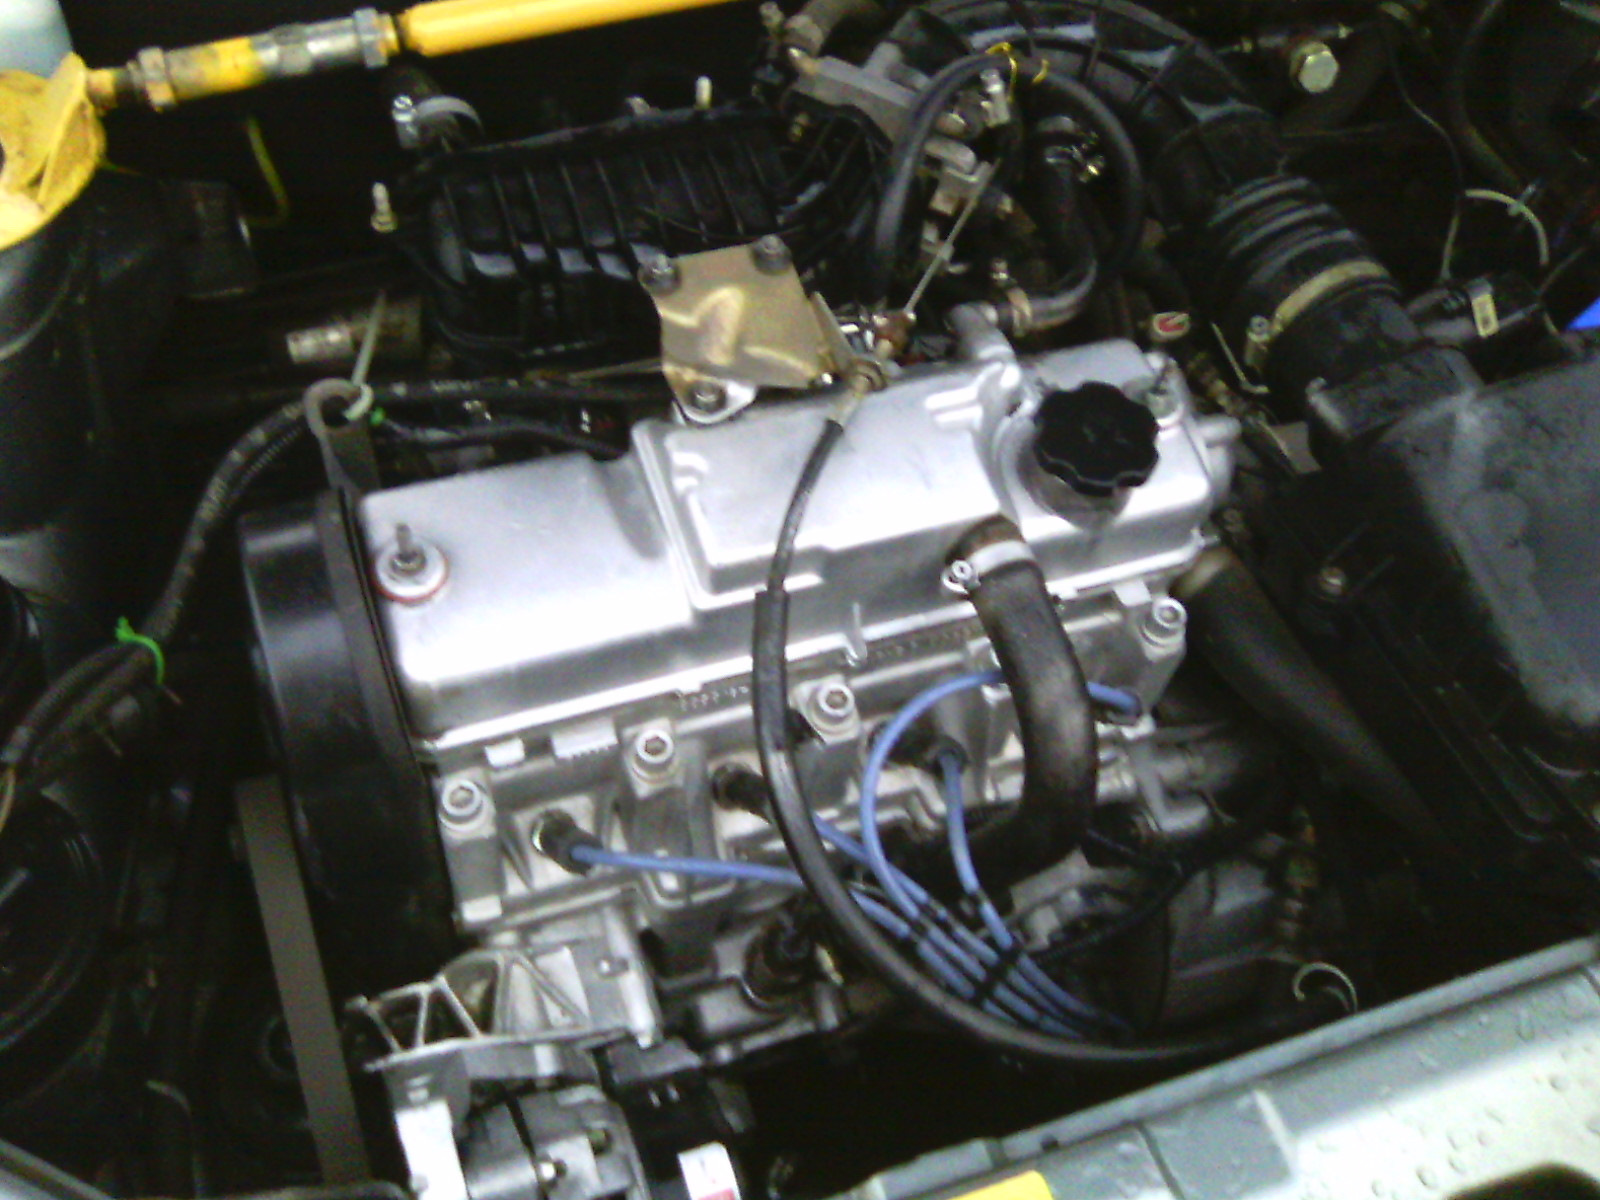 Купить двигатель на 2110 8 клапанов. ВАЗ 2110 1.6 8 клапанный. ВАЗ 2110 8 клапанный. Мотор 8 клапанный ВАЗ 2110. Движок 8 клапанный ВАЗ 2110.